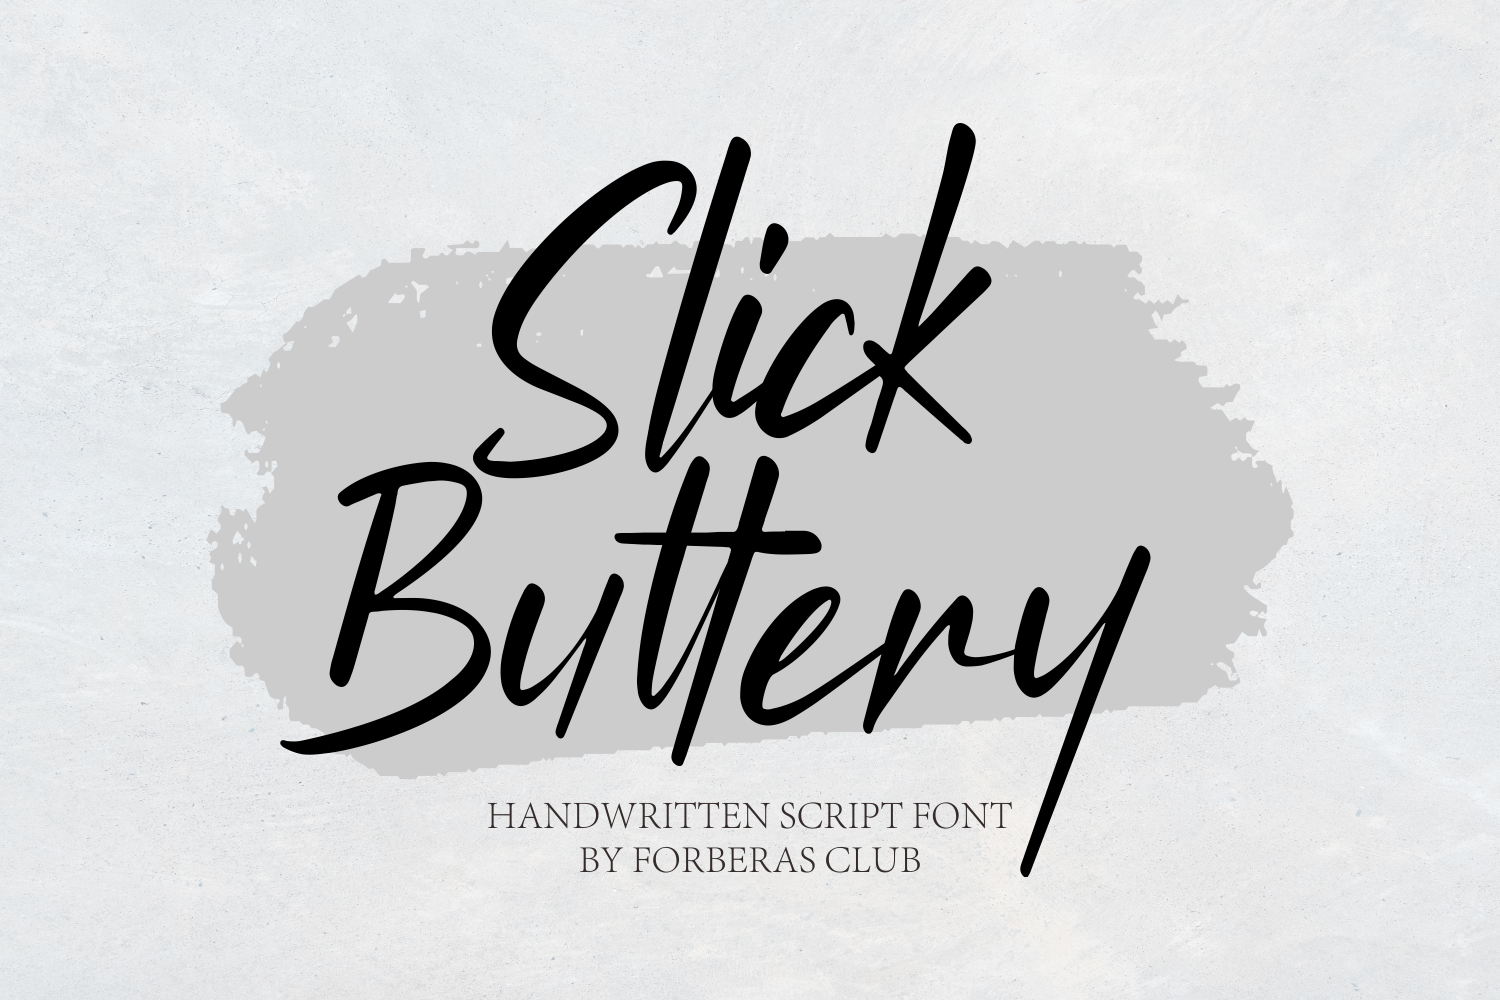 Slick Buttery Script Font